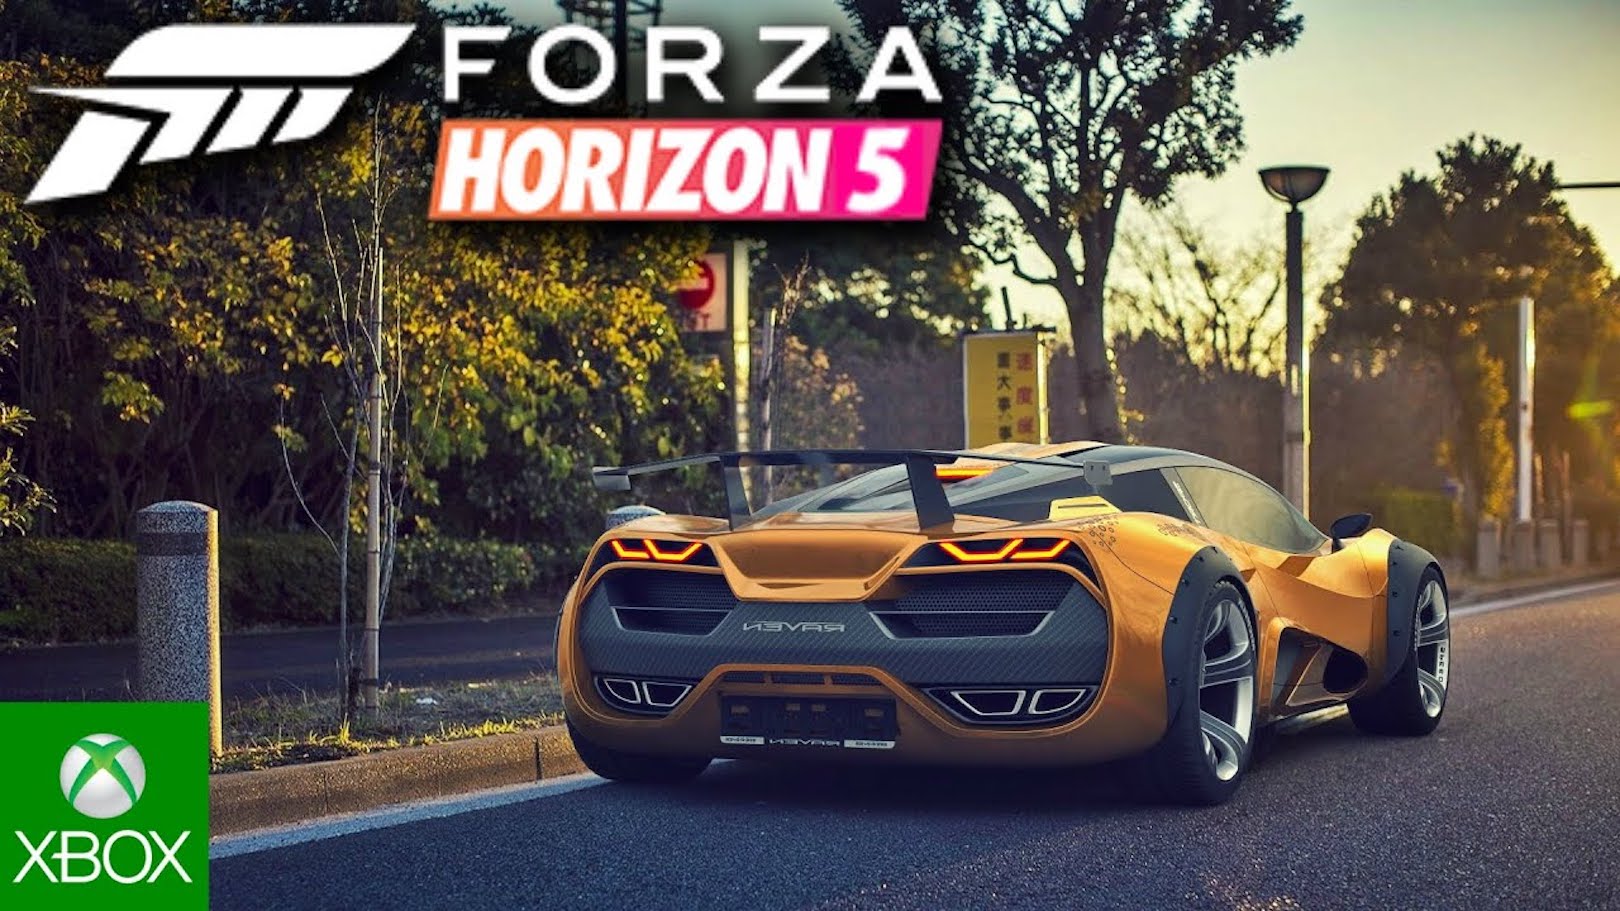 Forza Horizon 5 Sistem Gereksinimleri